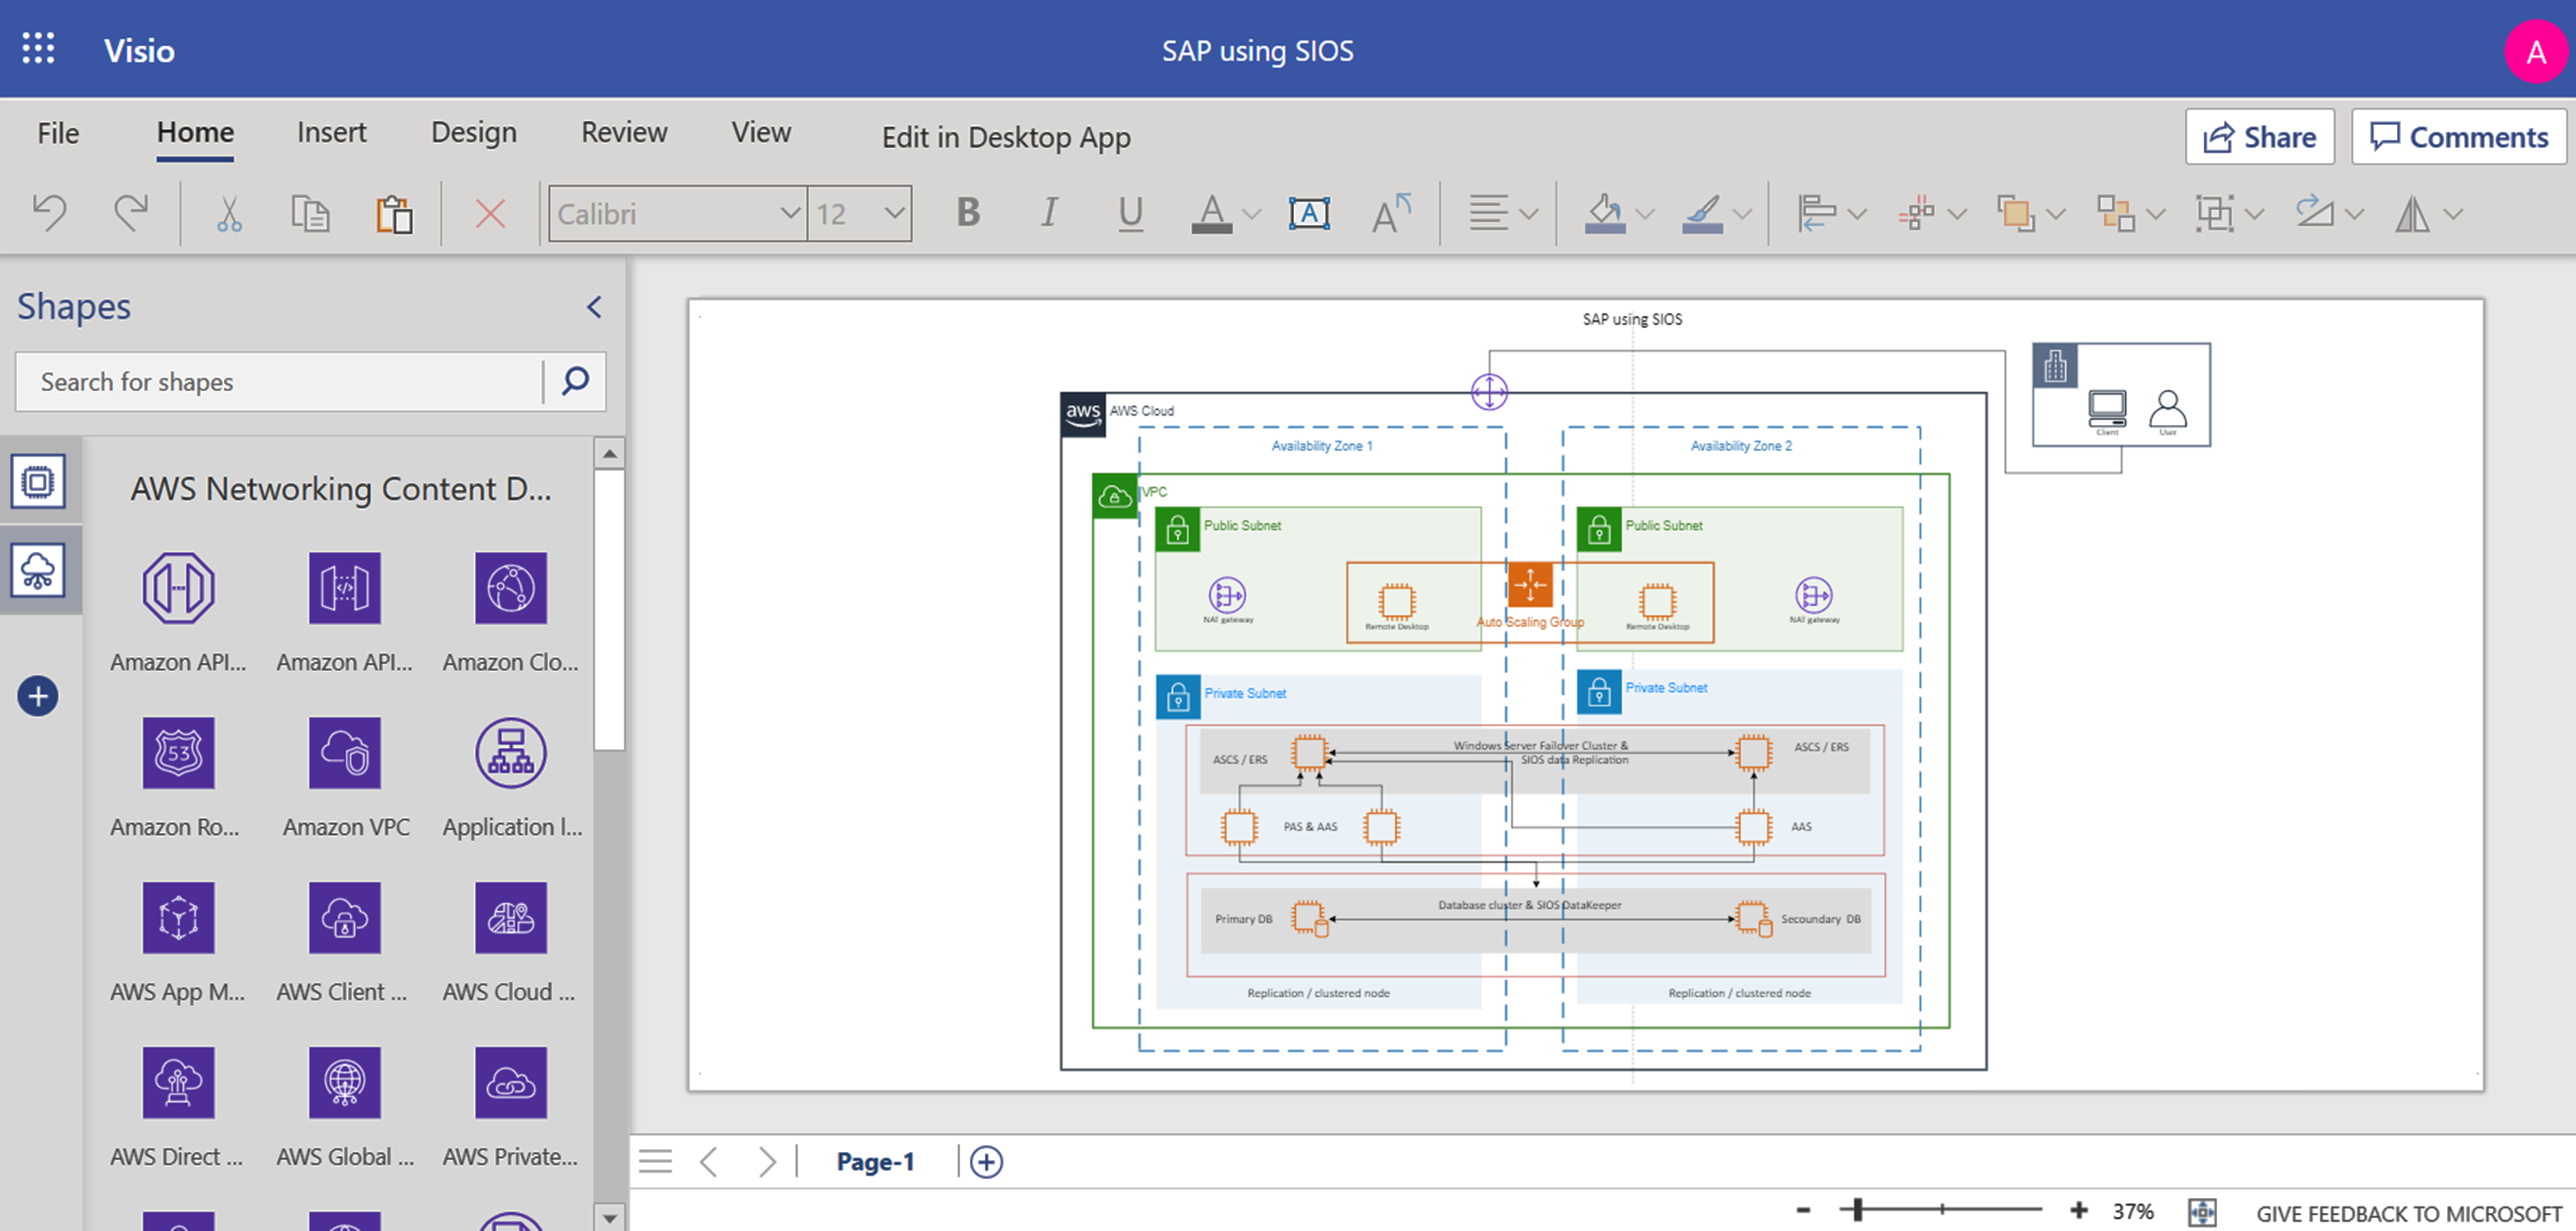 Deze afbeelding toont een schermafbeeldingsdiagram van SAP dat gebruikmaakt van SIOS.